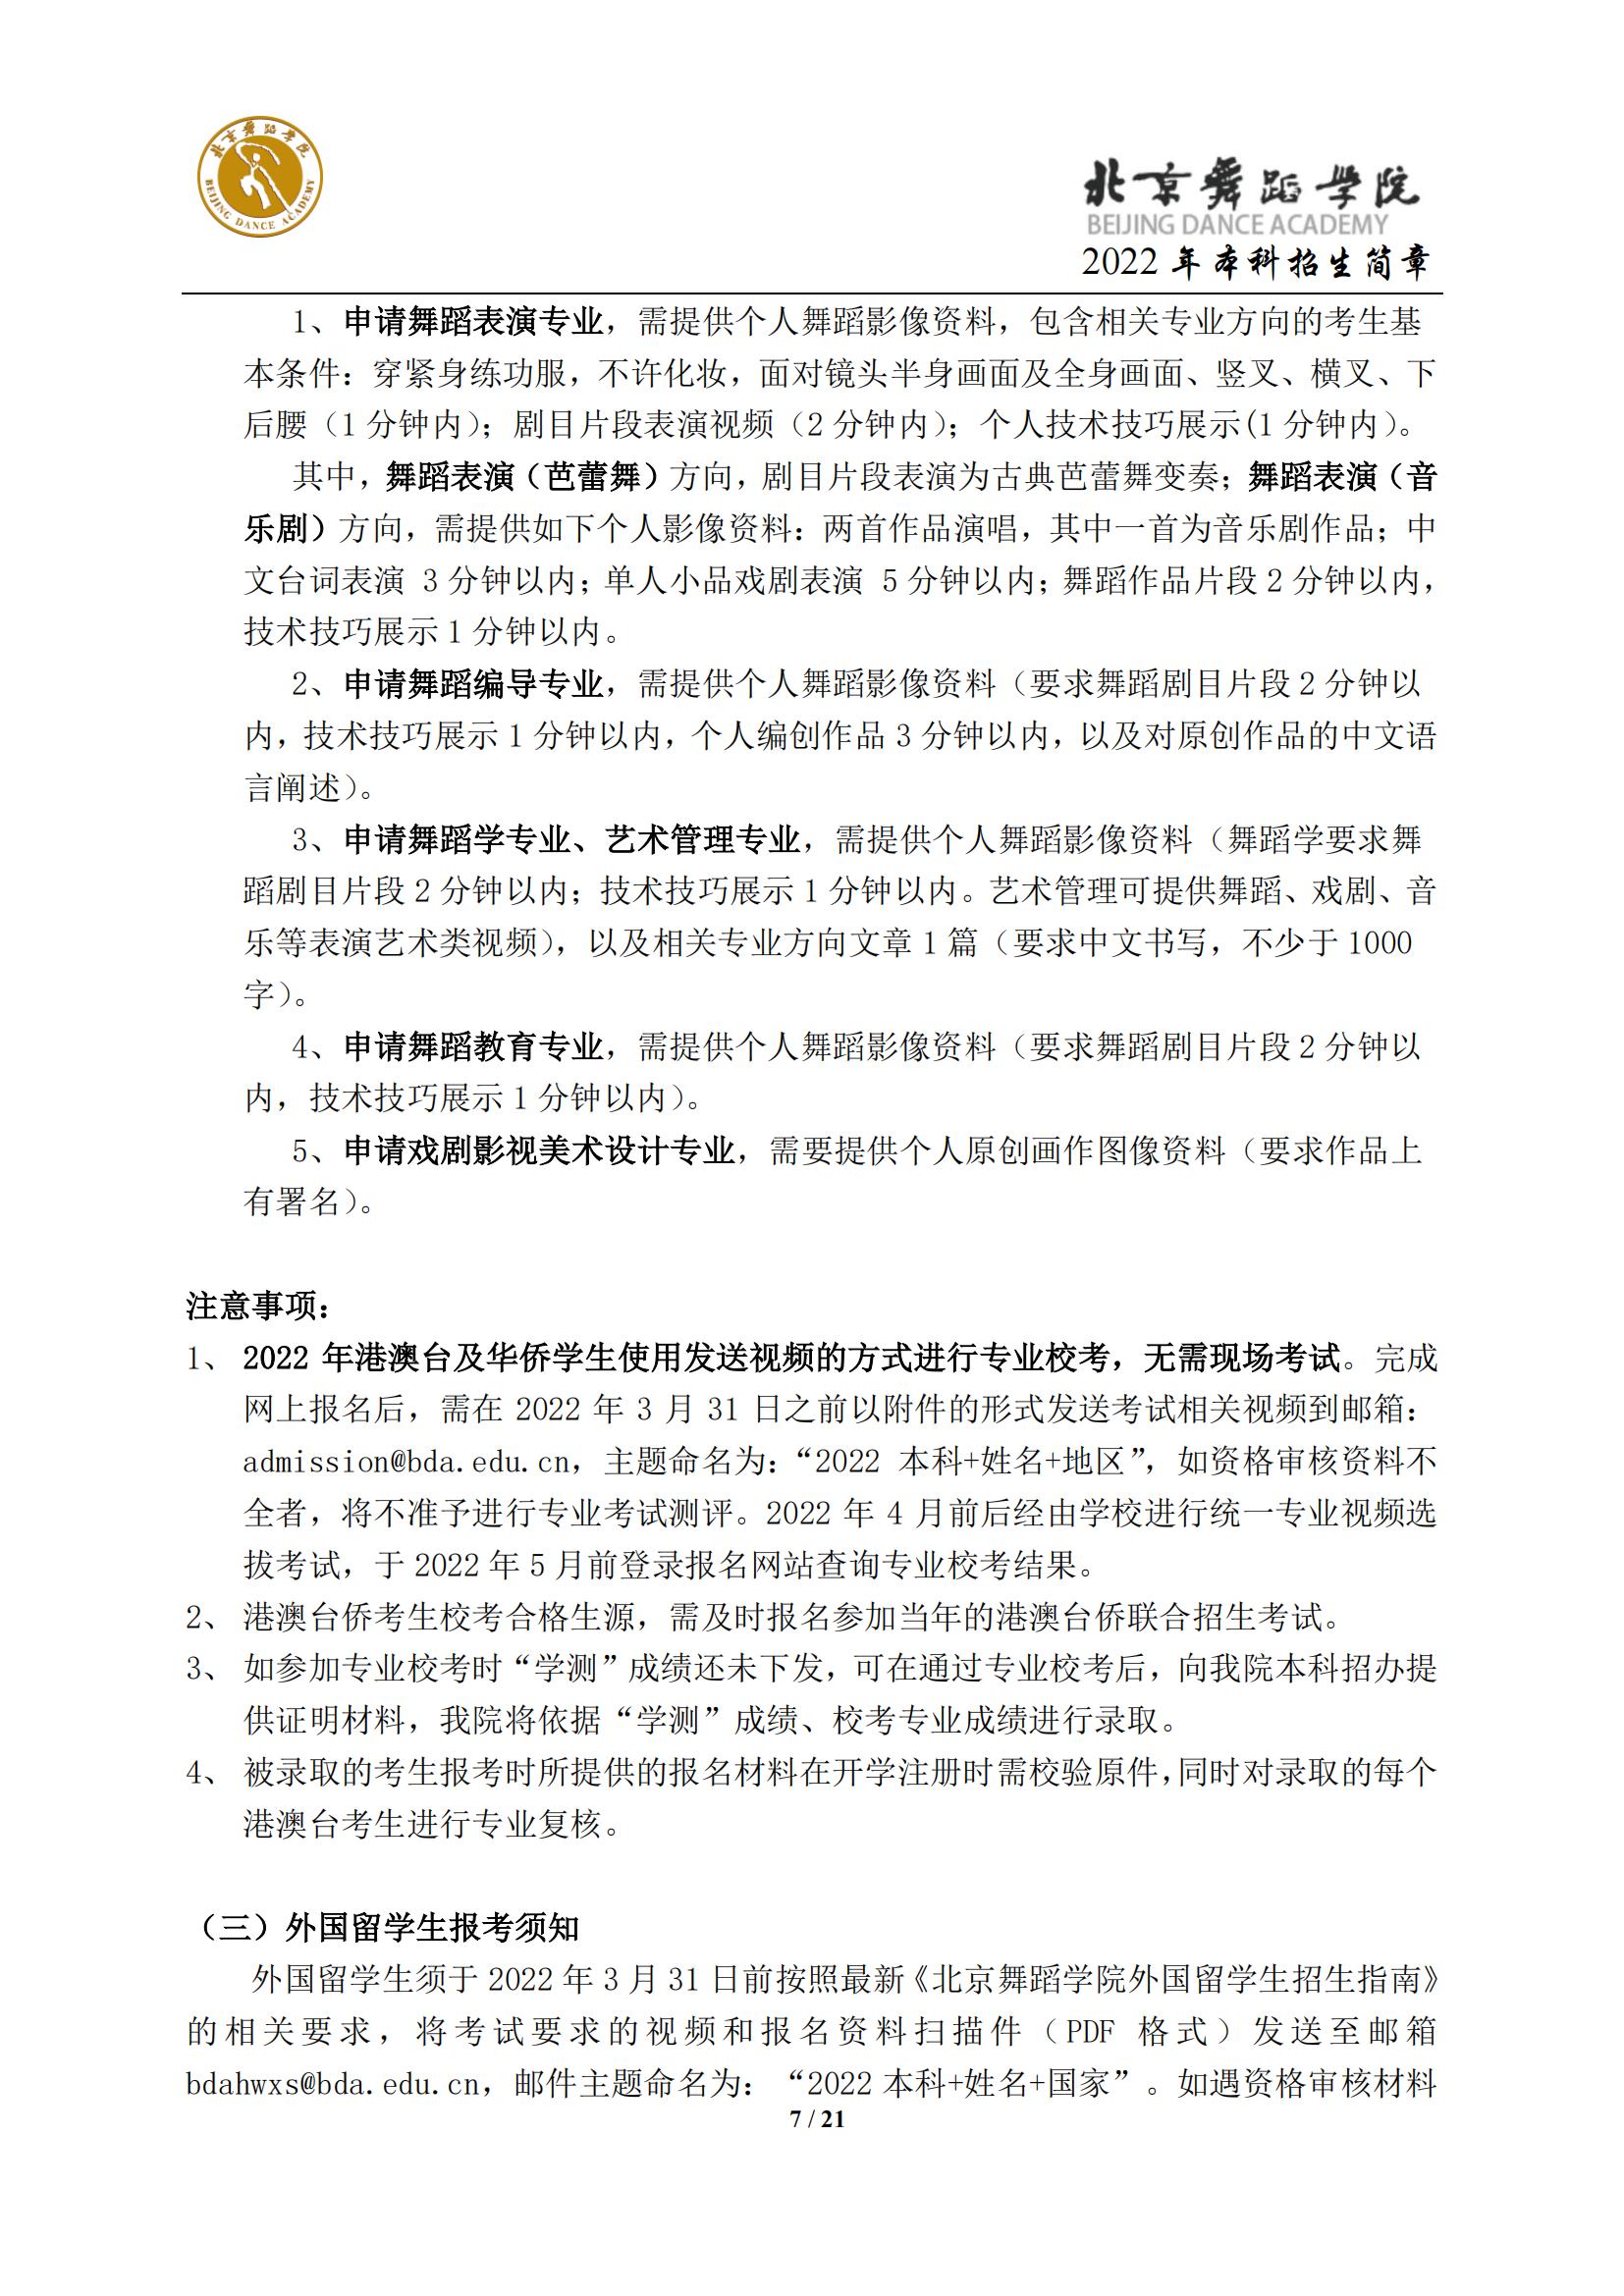 2022年北京舞蹈学院艺术类招生简章